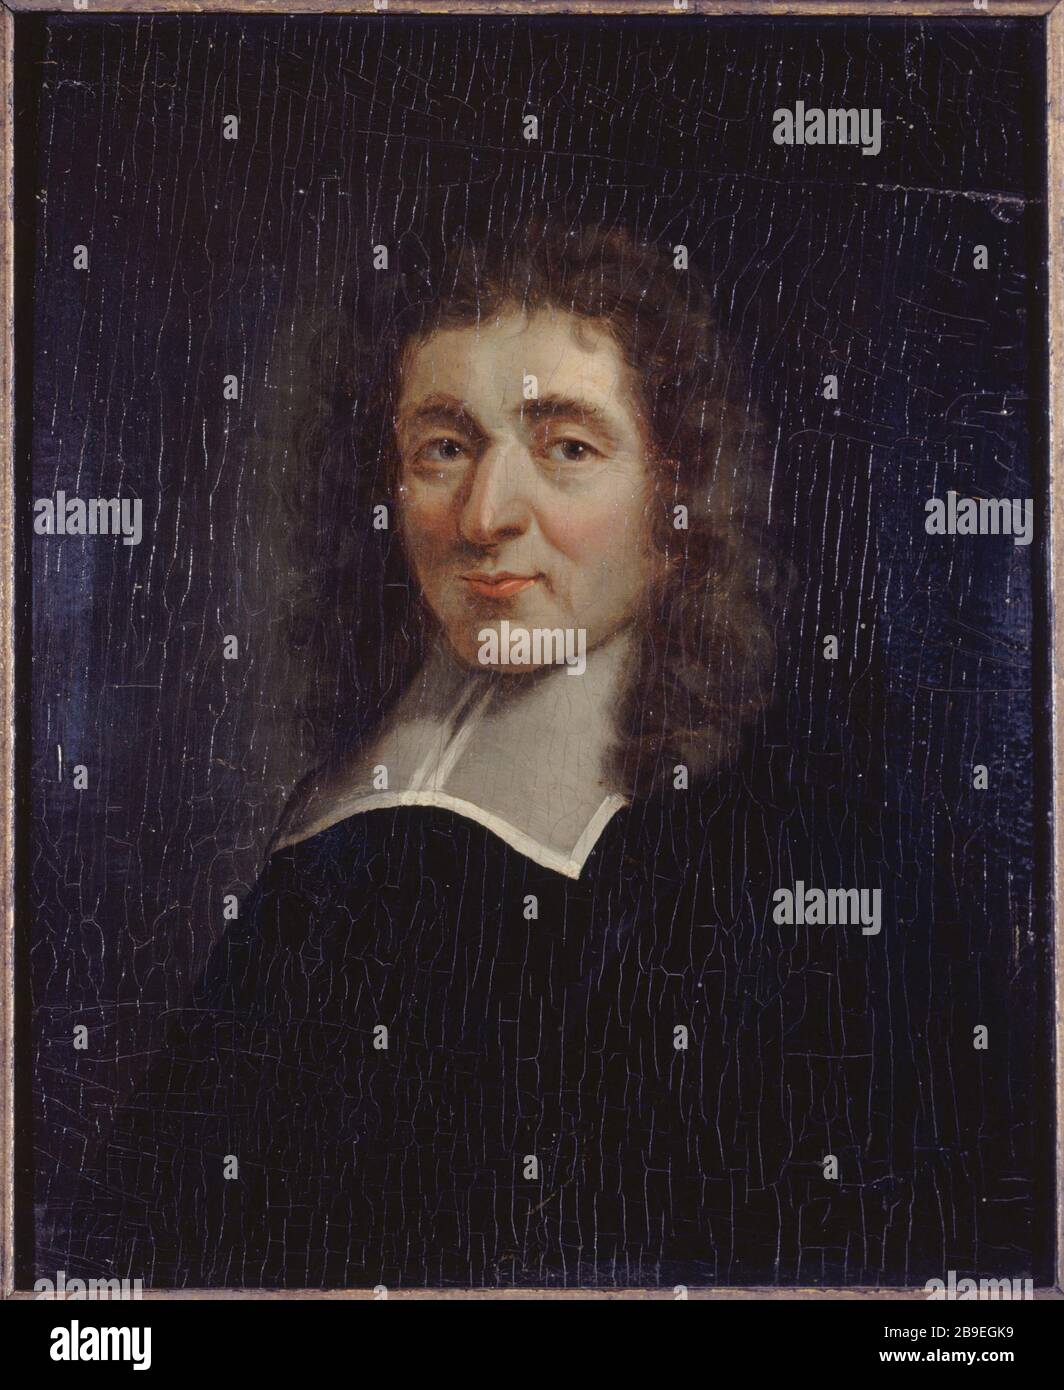 ANTOINE Furetiere Antoine Furetière (1619-1688), écrivain grammairien français. Paris, musée Carnavalet. Stockfoto